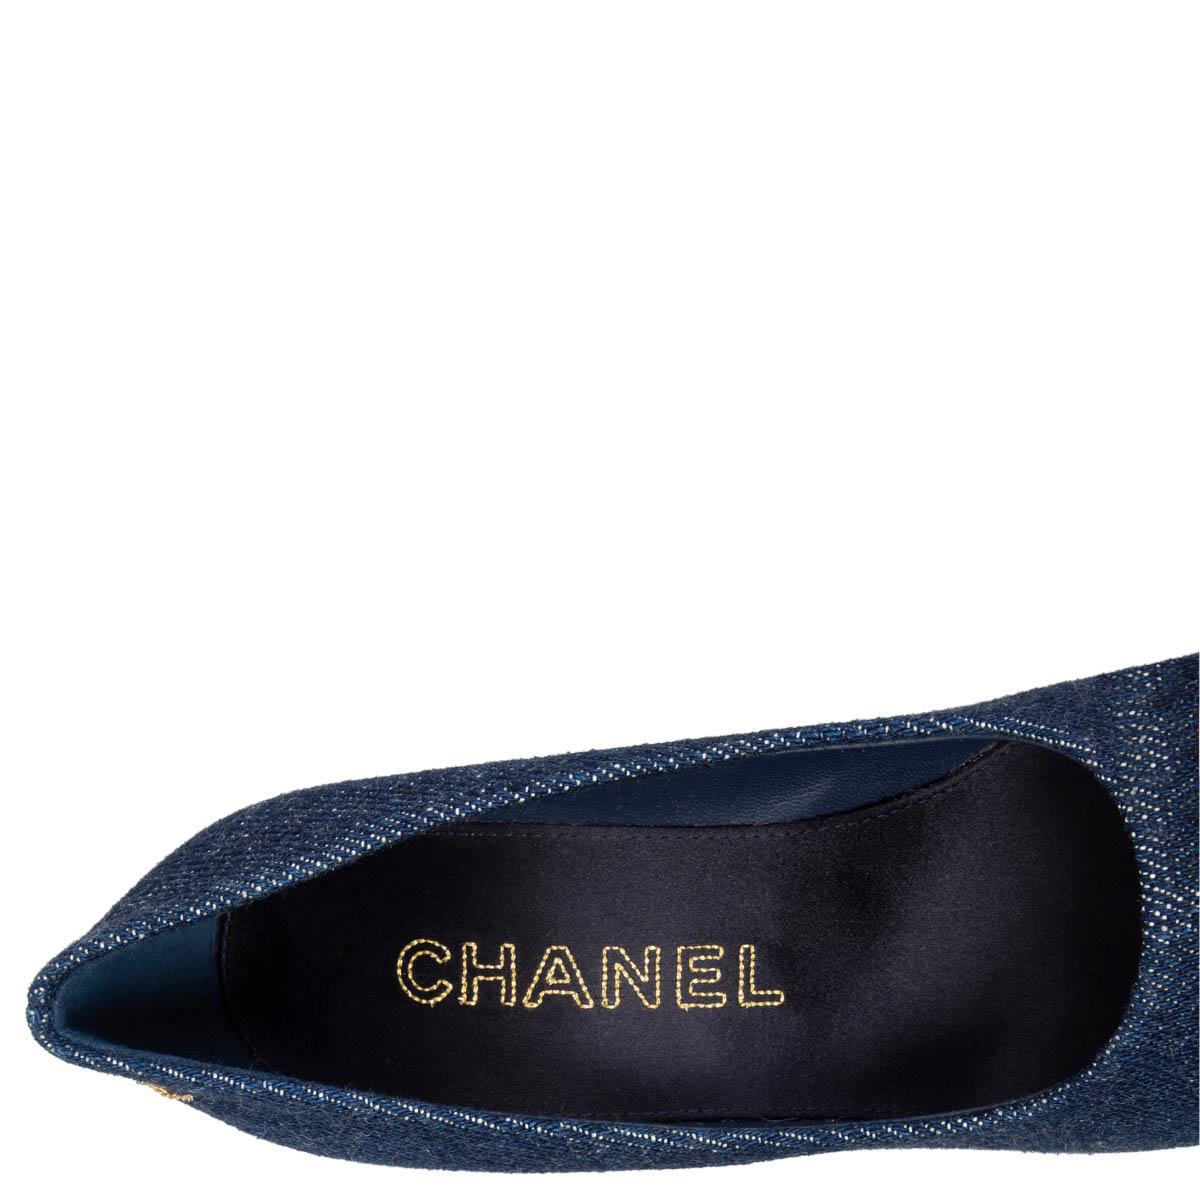 Black CHANEL blue DENIM WEDGE ROUND TOE Pumps Shoes 37 C